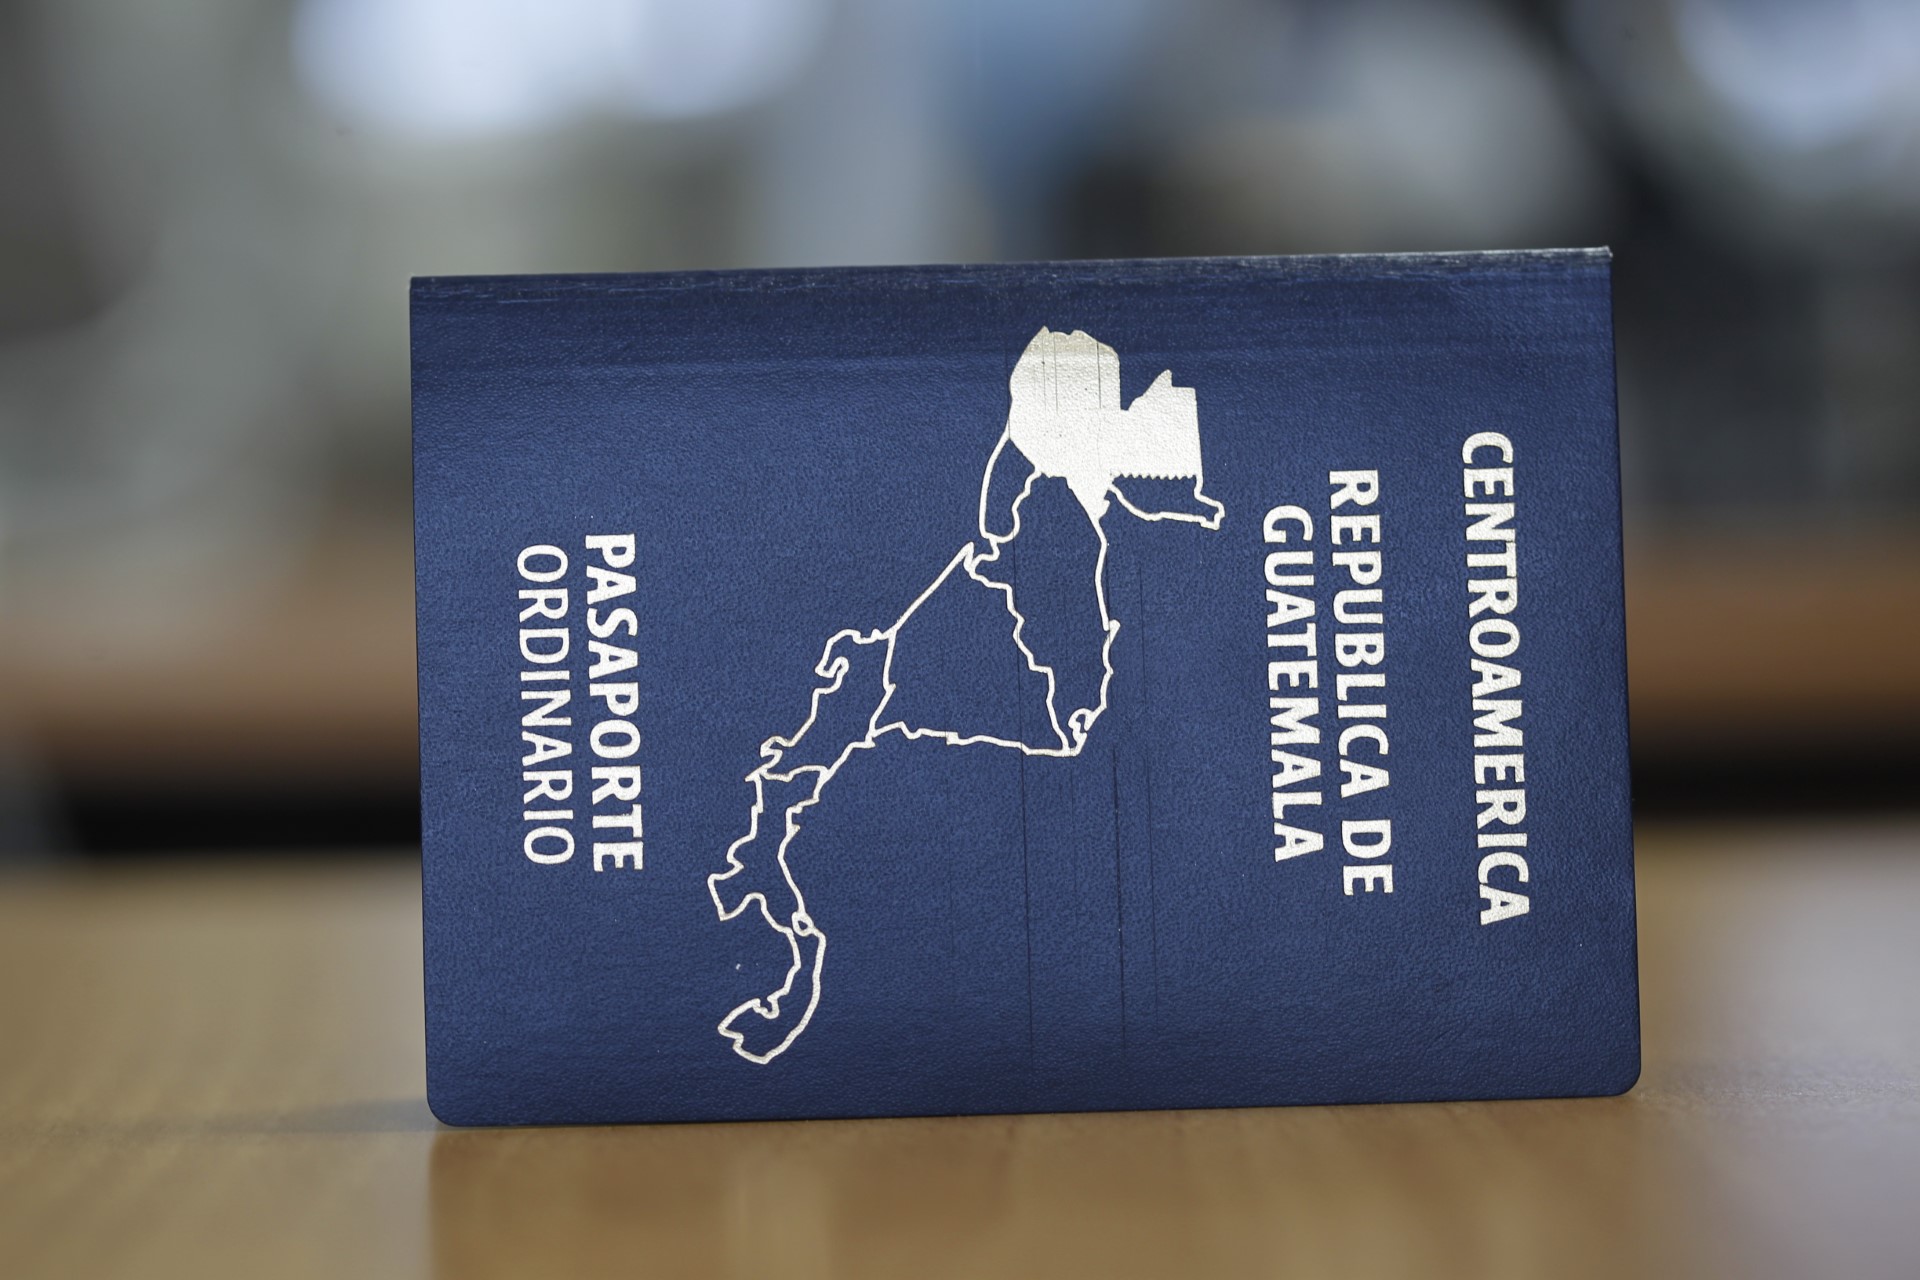 El pasaporte es un documento oficial que permite que una persona se pueda identificar cuando viaja y se encuentra fuera de su país. (Foto Prensa Libre: Hemeroteca)